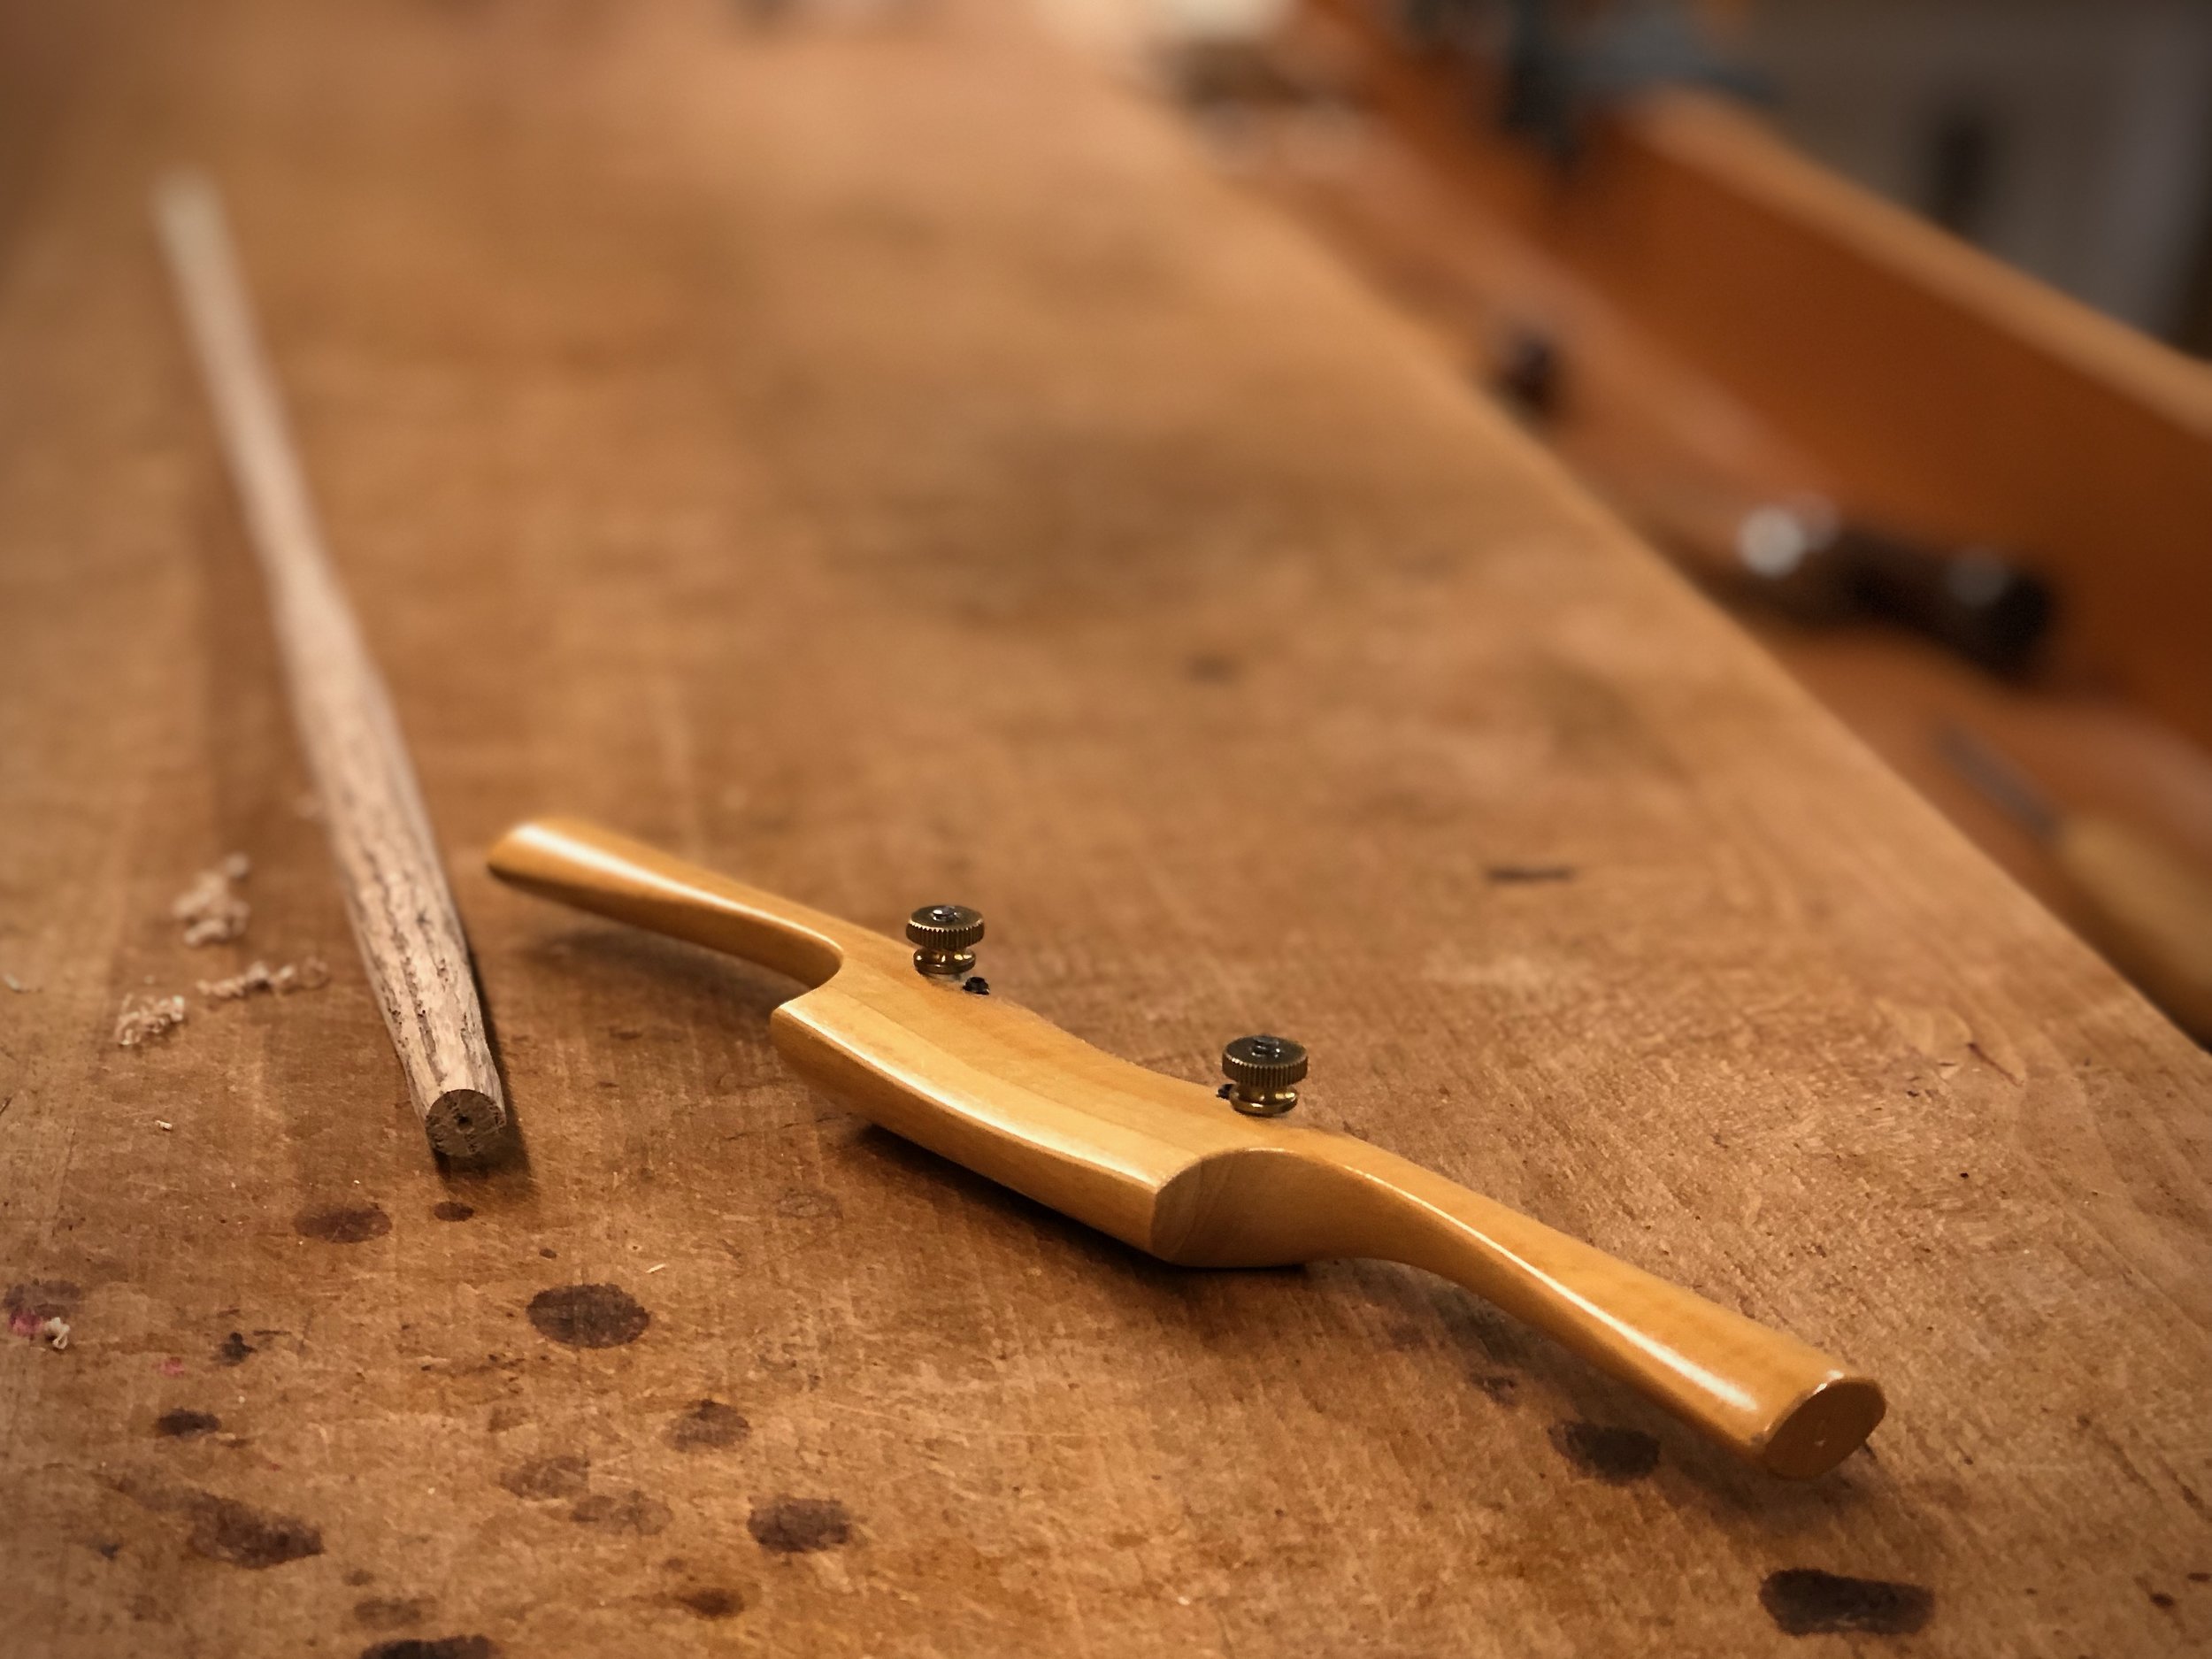 Making a Wooden Spokeshave — Philadelphia Furniture Workshop